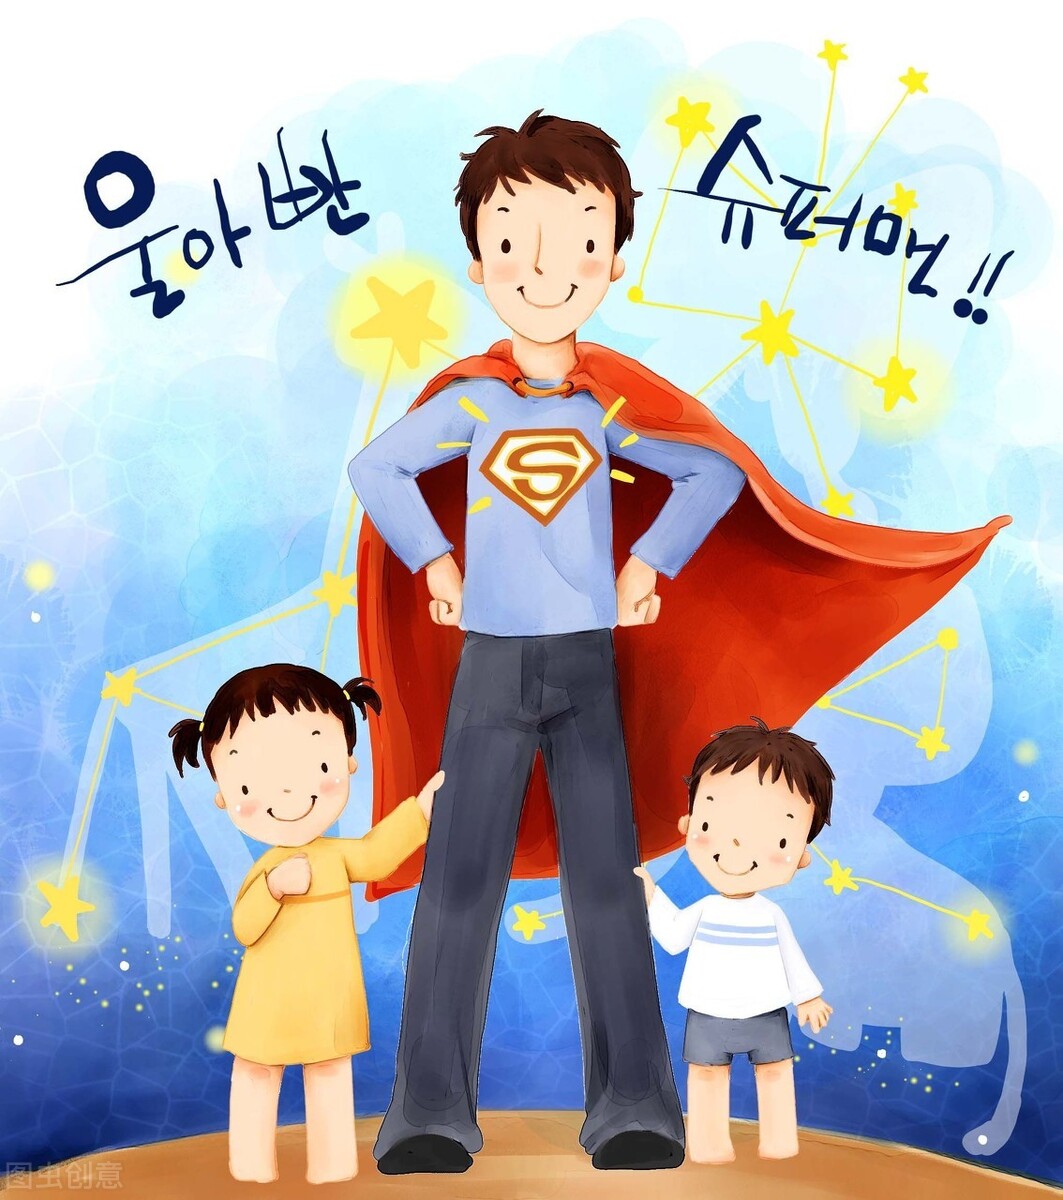 為了節約培訓費，我變成了十項全能，成為孩子心中的超人爸爸